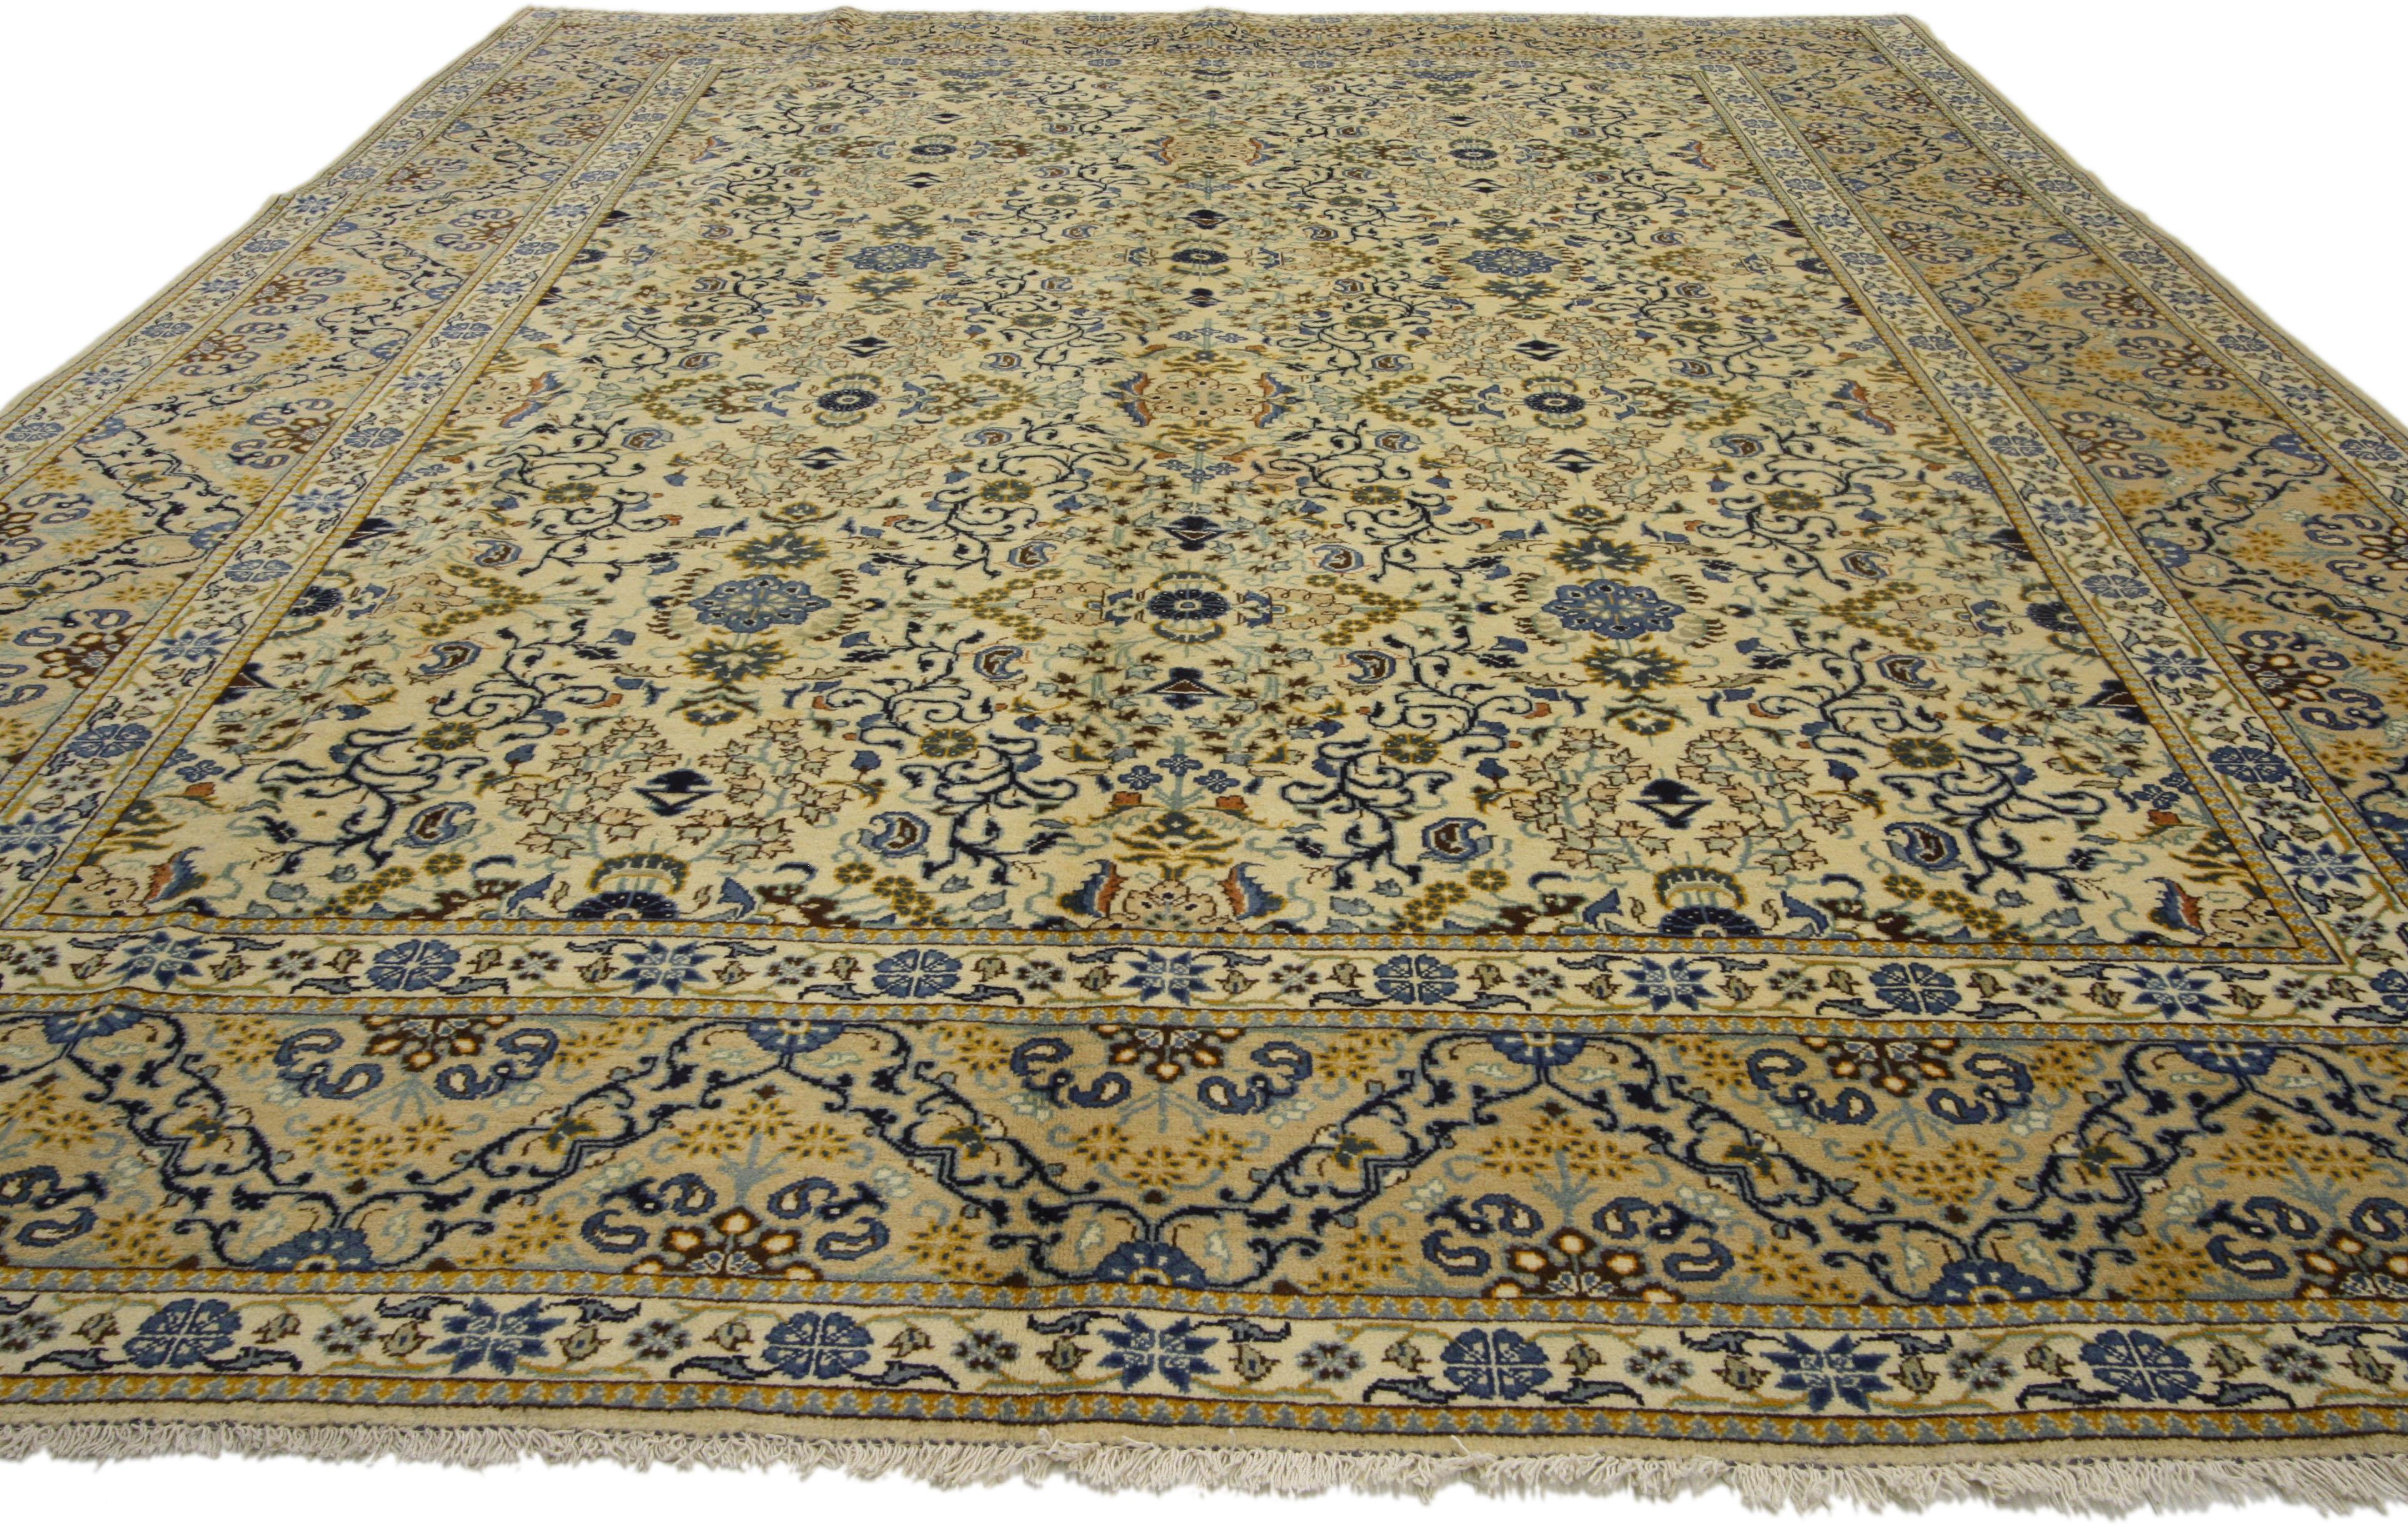 76475 Vintage Persian Kashan Millefleur Rug with Farmhouse Cottage Style 08'04 x 11'06. Avec des éléments architecturaux de formes arabesques courbes et des détails décoratifs, ce tapis persan vintage en laine nouée à la main de type Kashan incarne